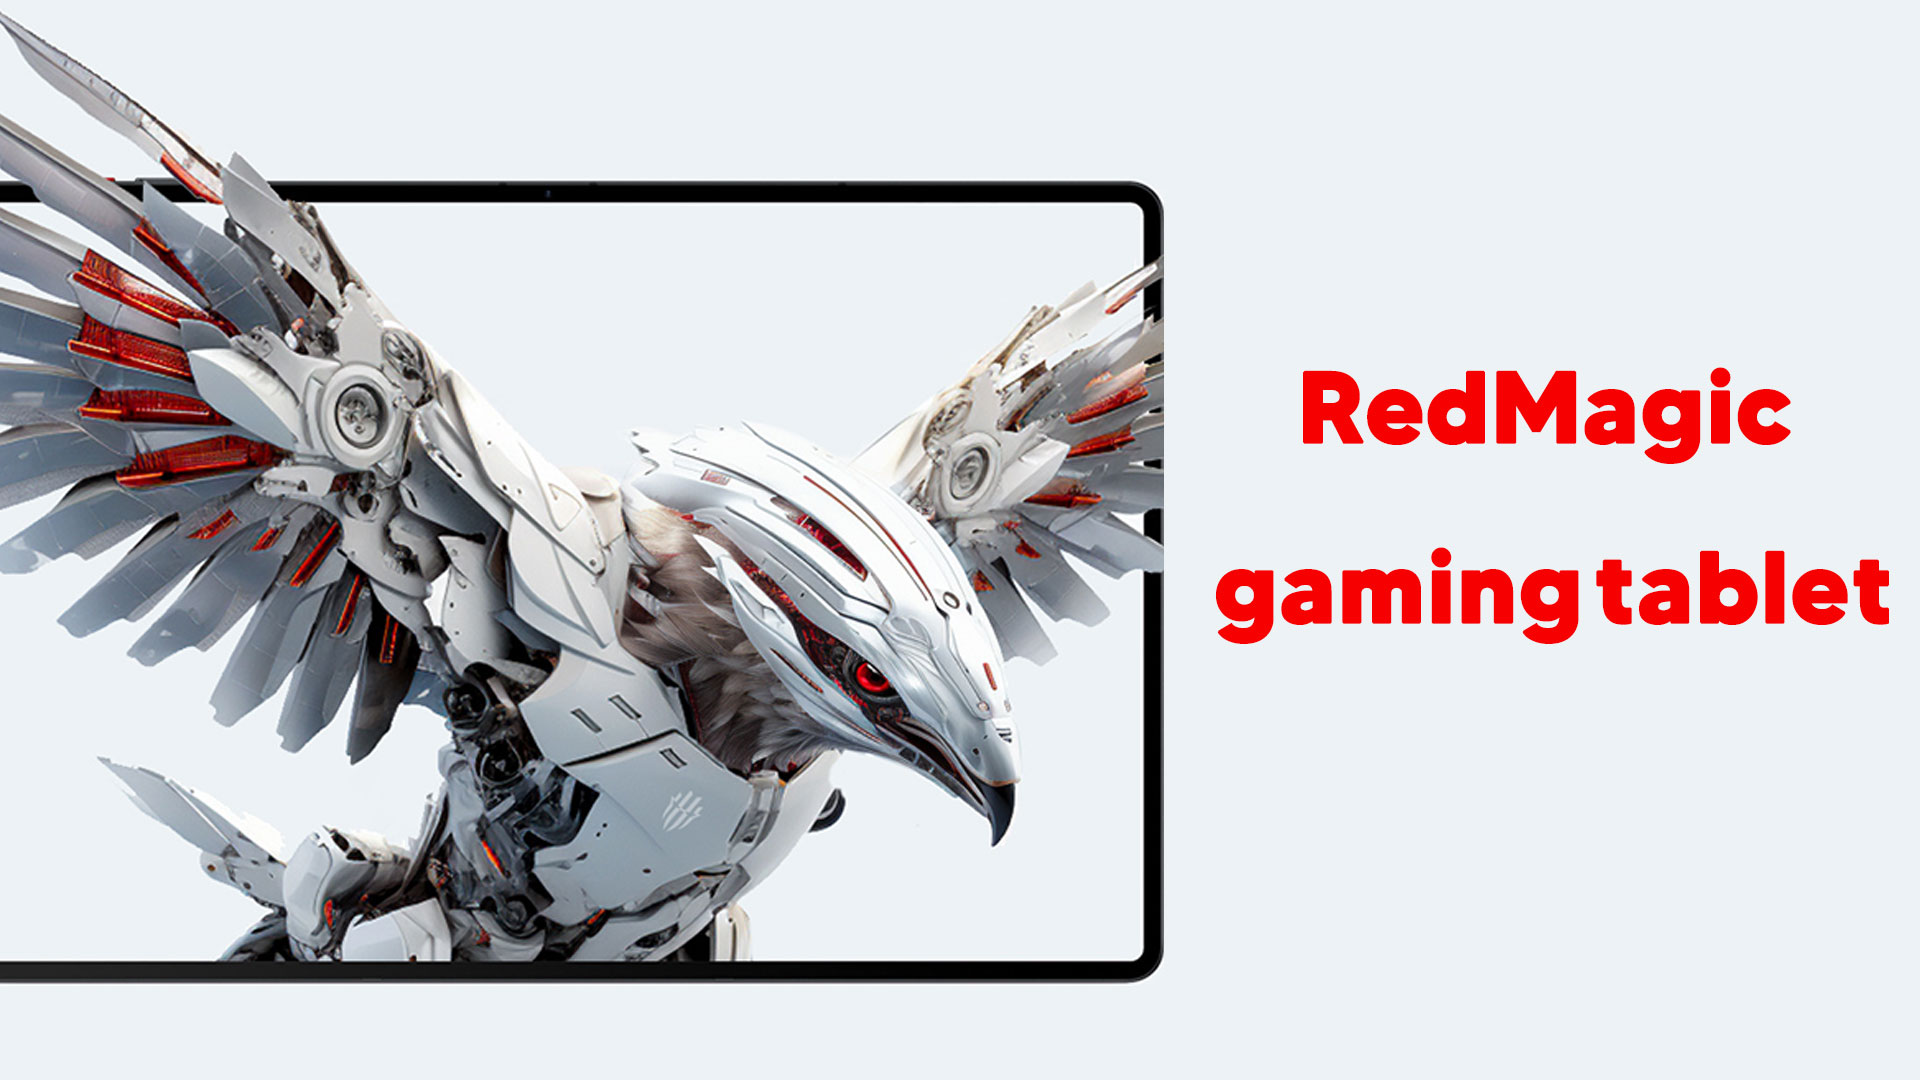 RedMagic gaming tablet